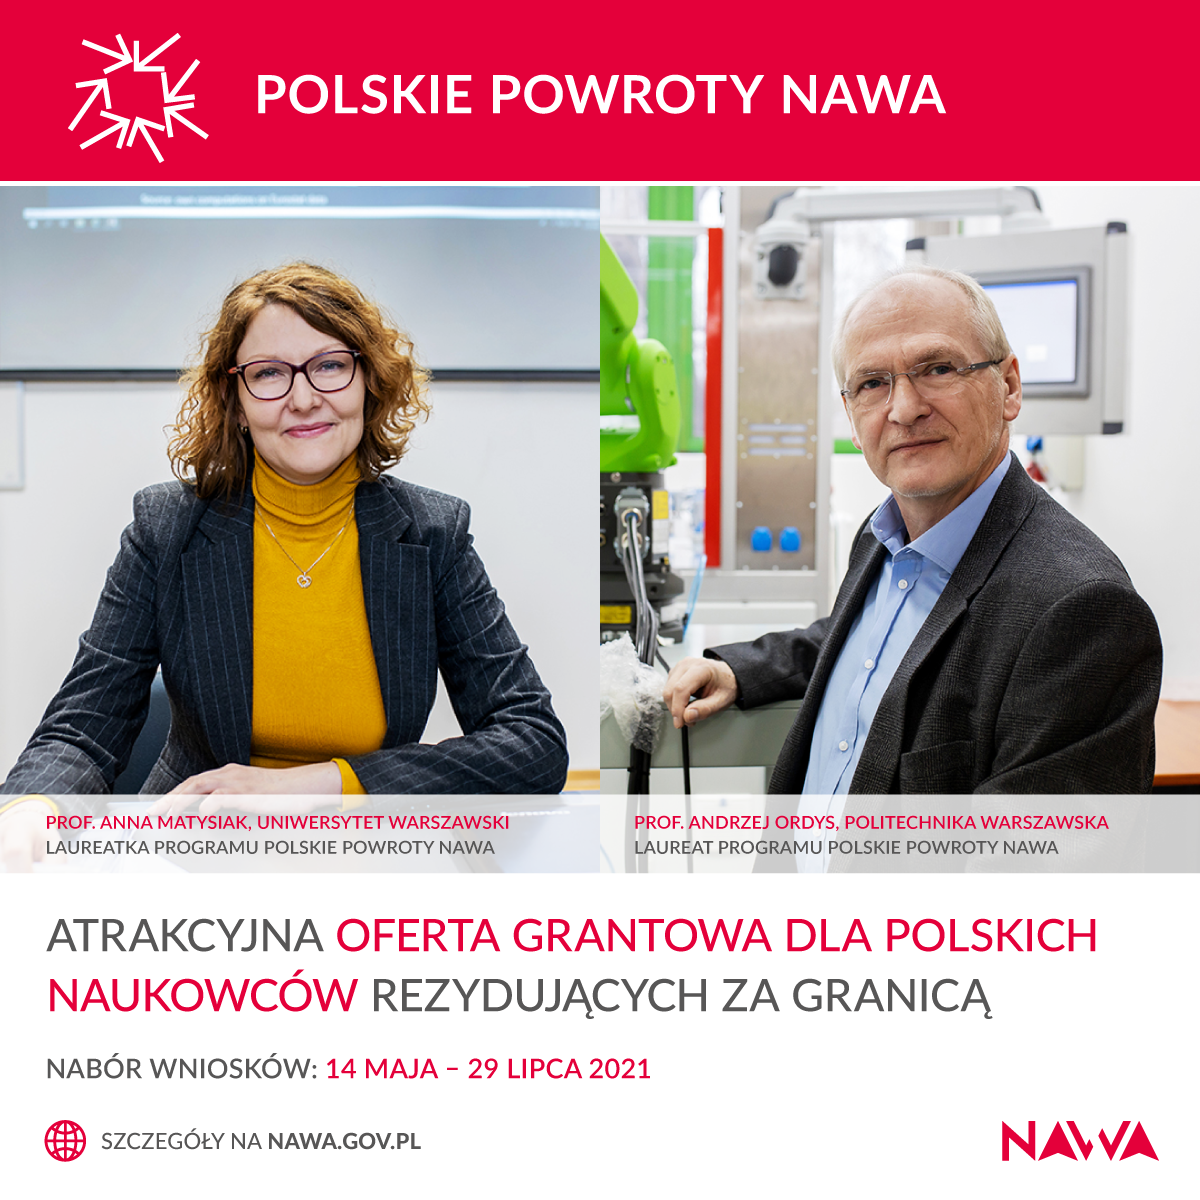 PolskiePowroty2021-nabór-PL.png [1.06 MB]